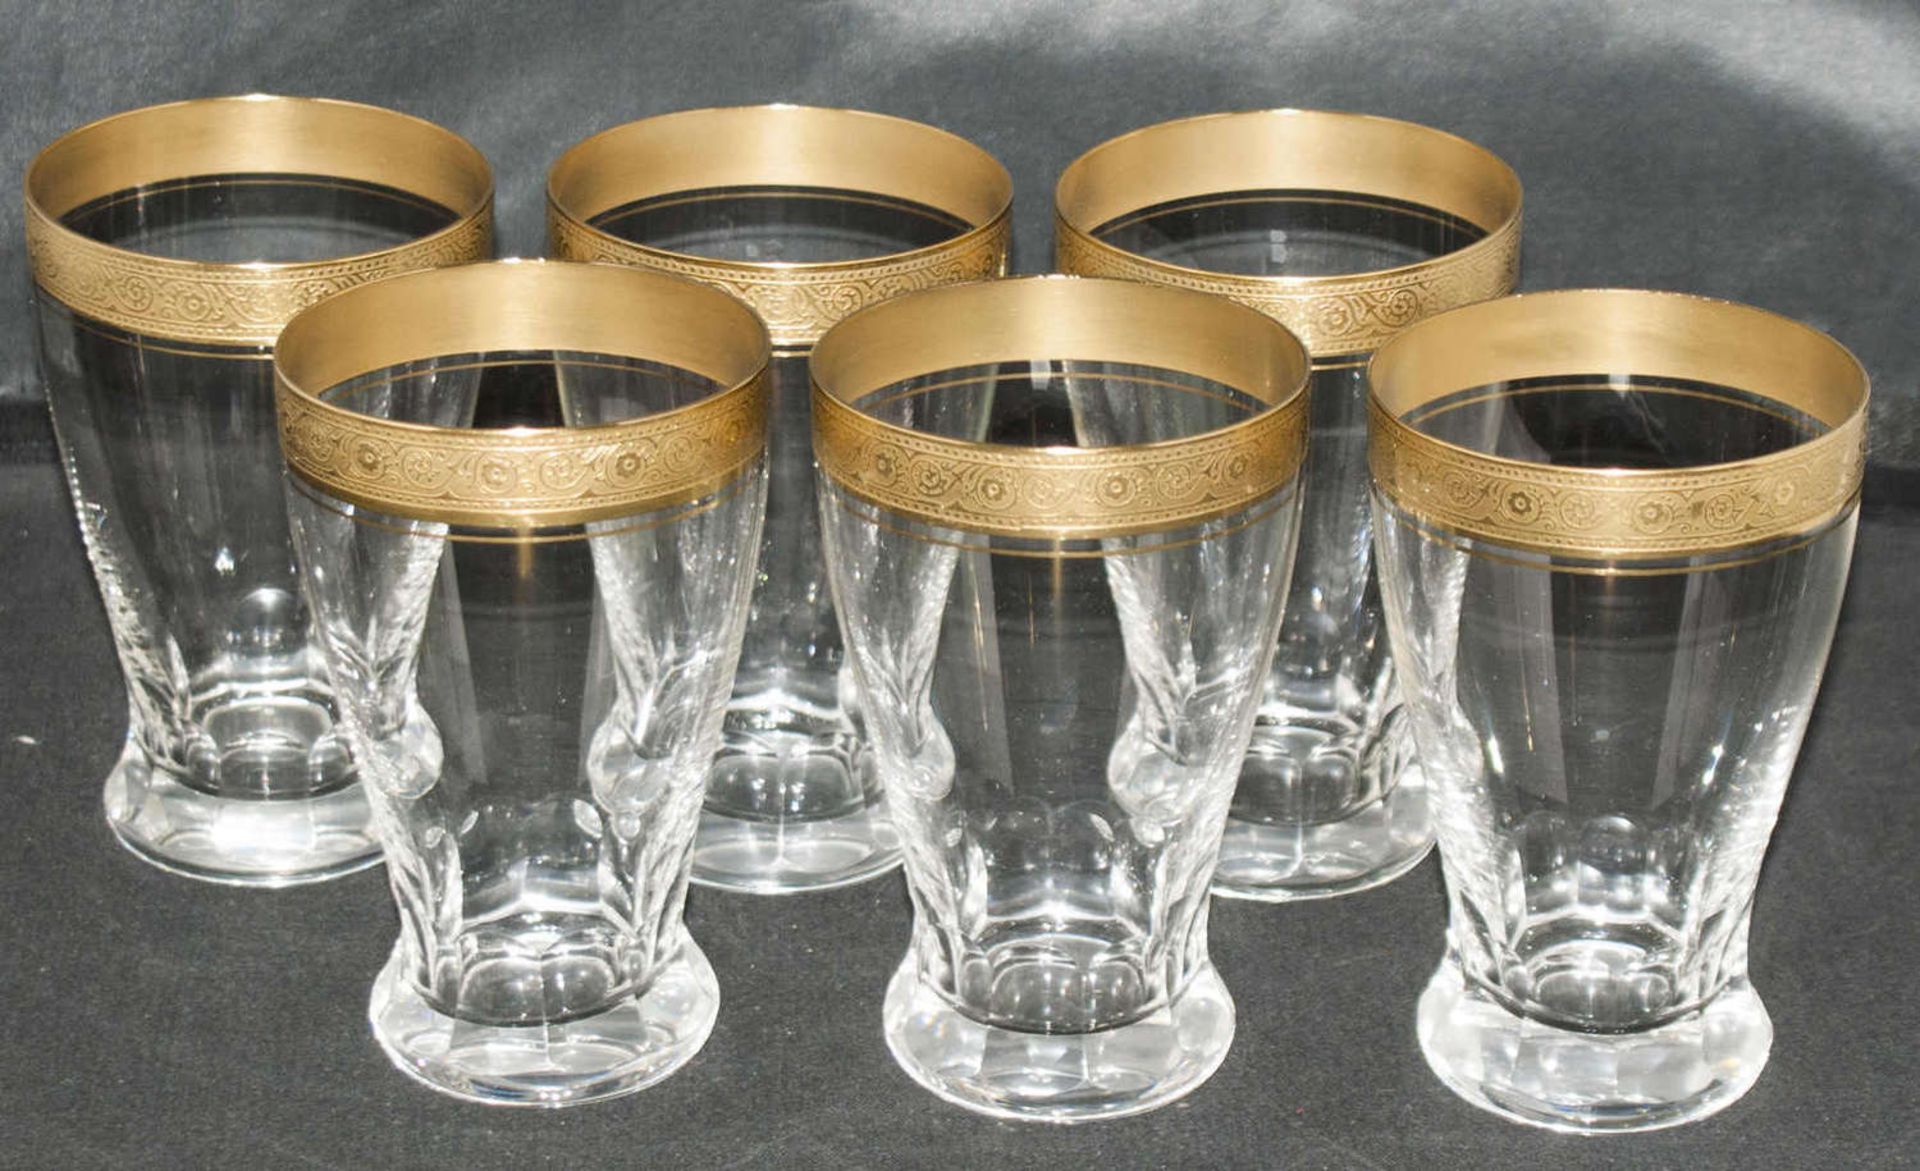 Theresienthal Conconde Mintonborde, Gläser Set mit Goldrelief. 6 Wassergläser. Sehr guter Zustand.